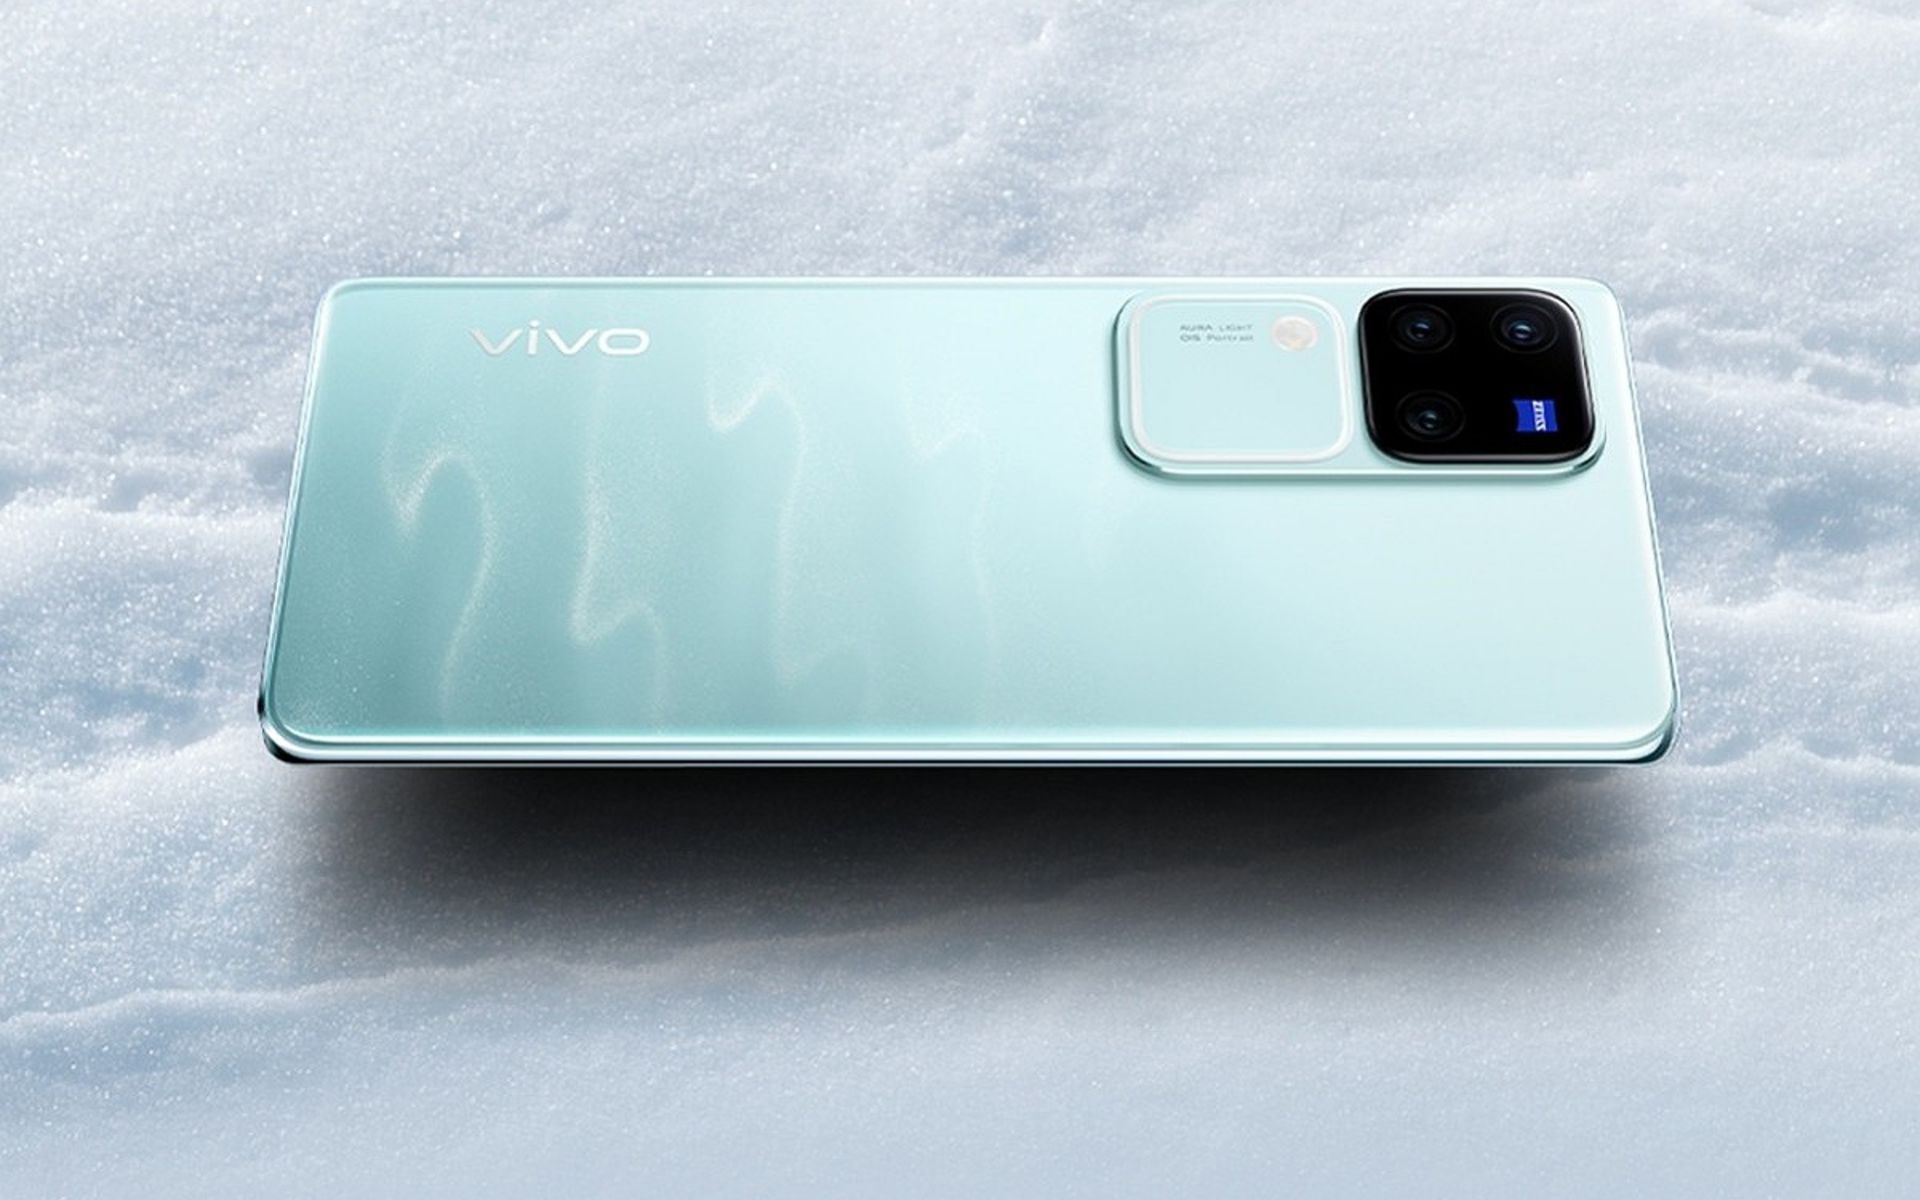 گوشی ویوو V30 پرو در رنگ آبی آسمانی